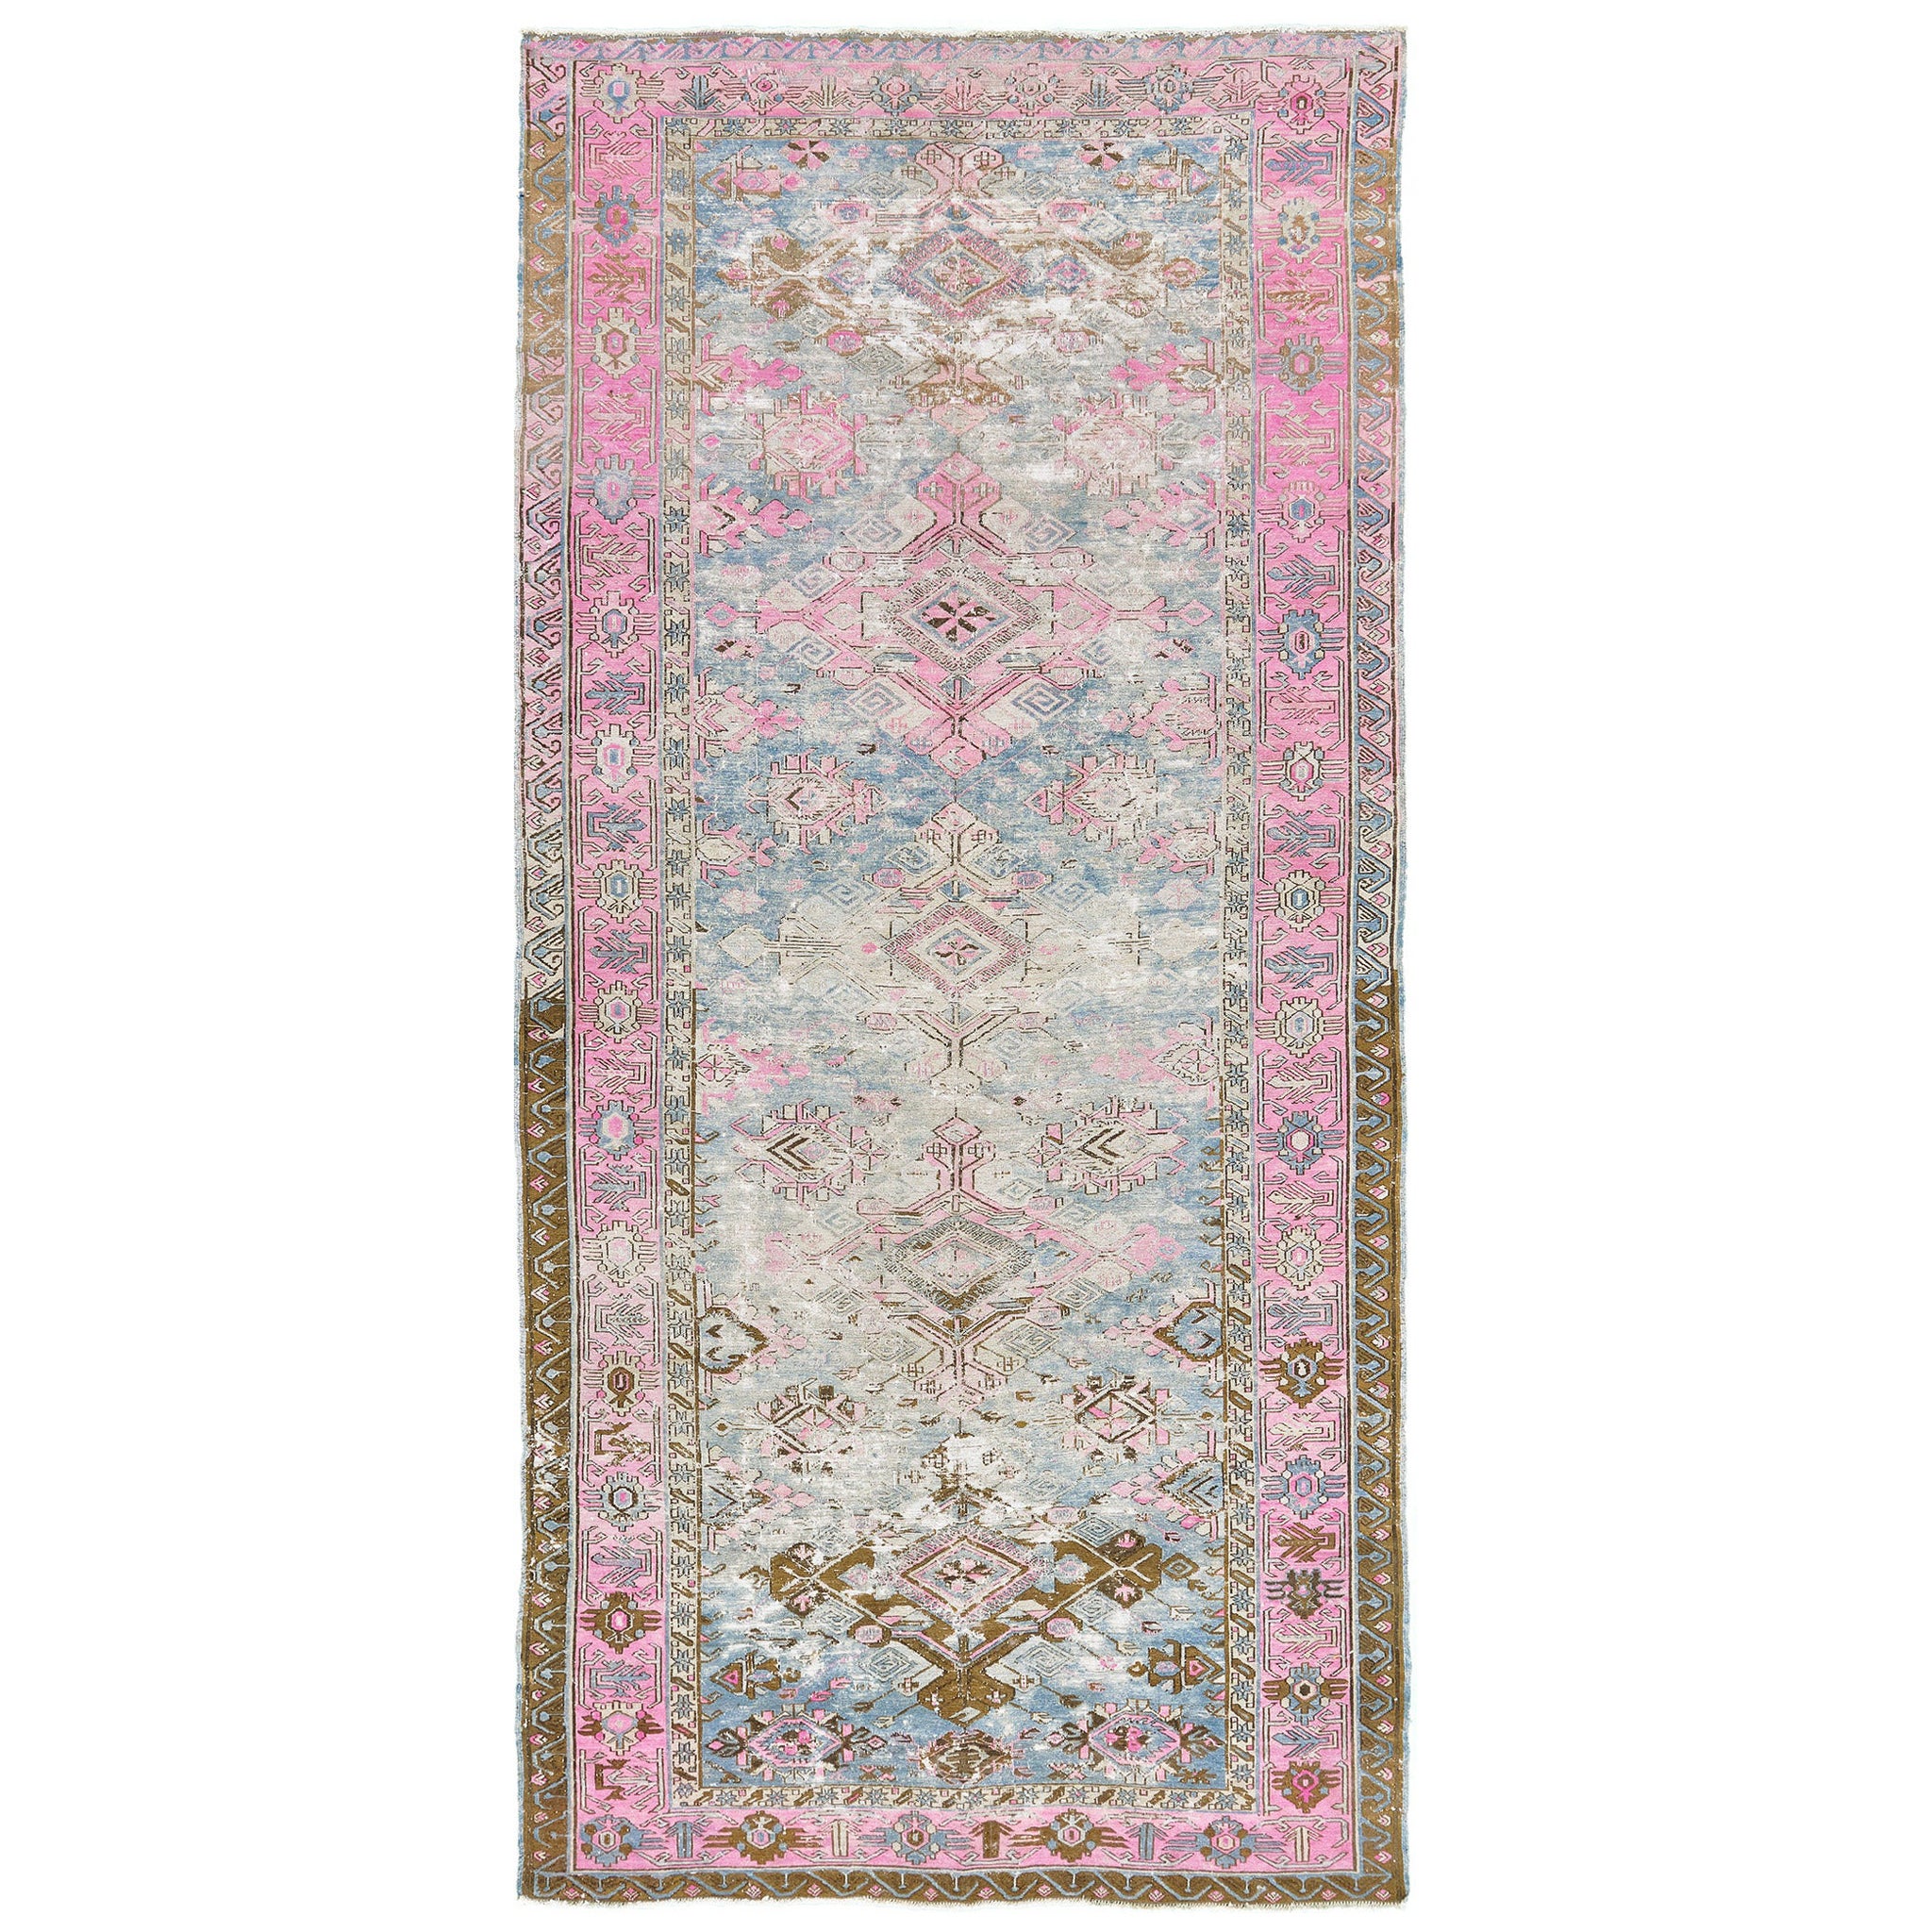 Antique Persian Soumak Rug 55399